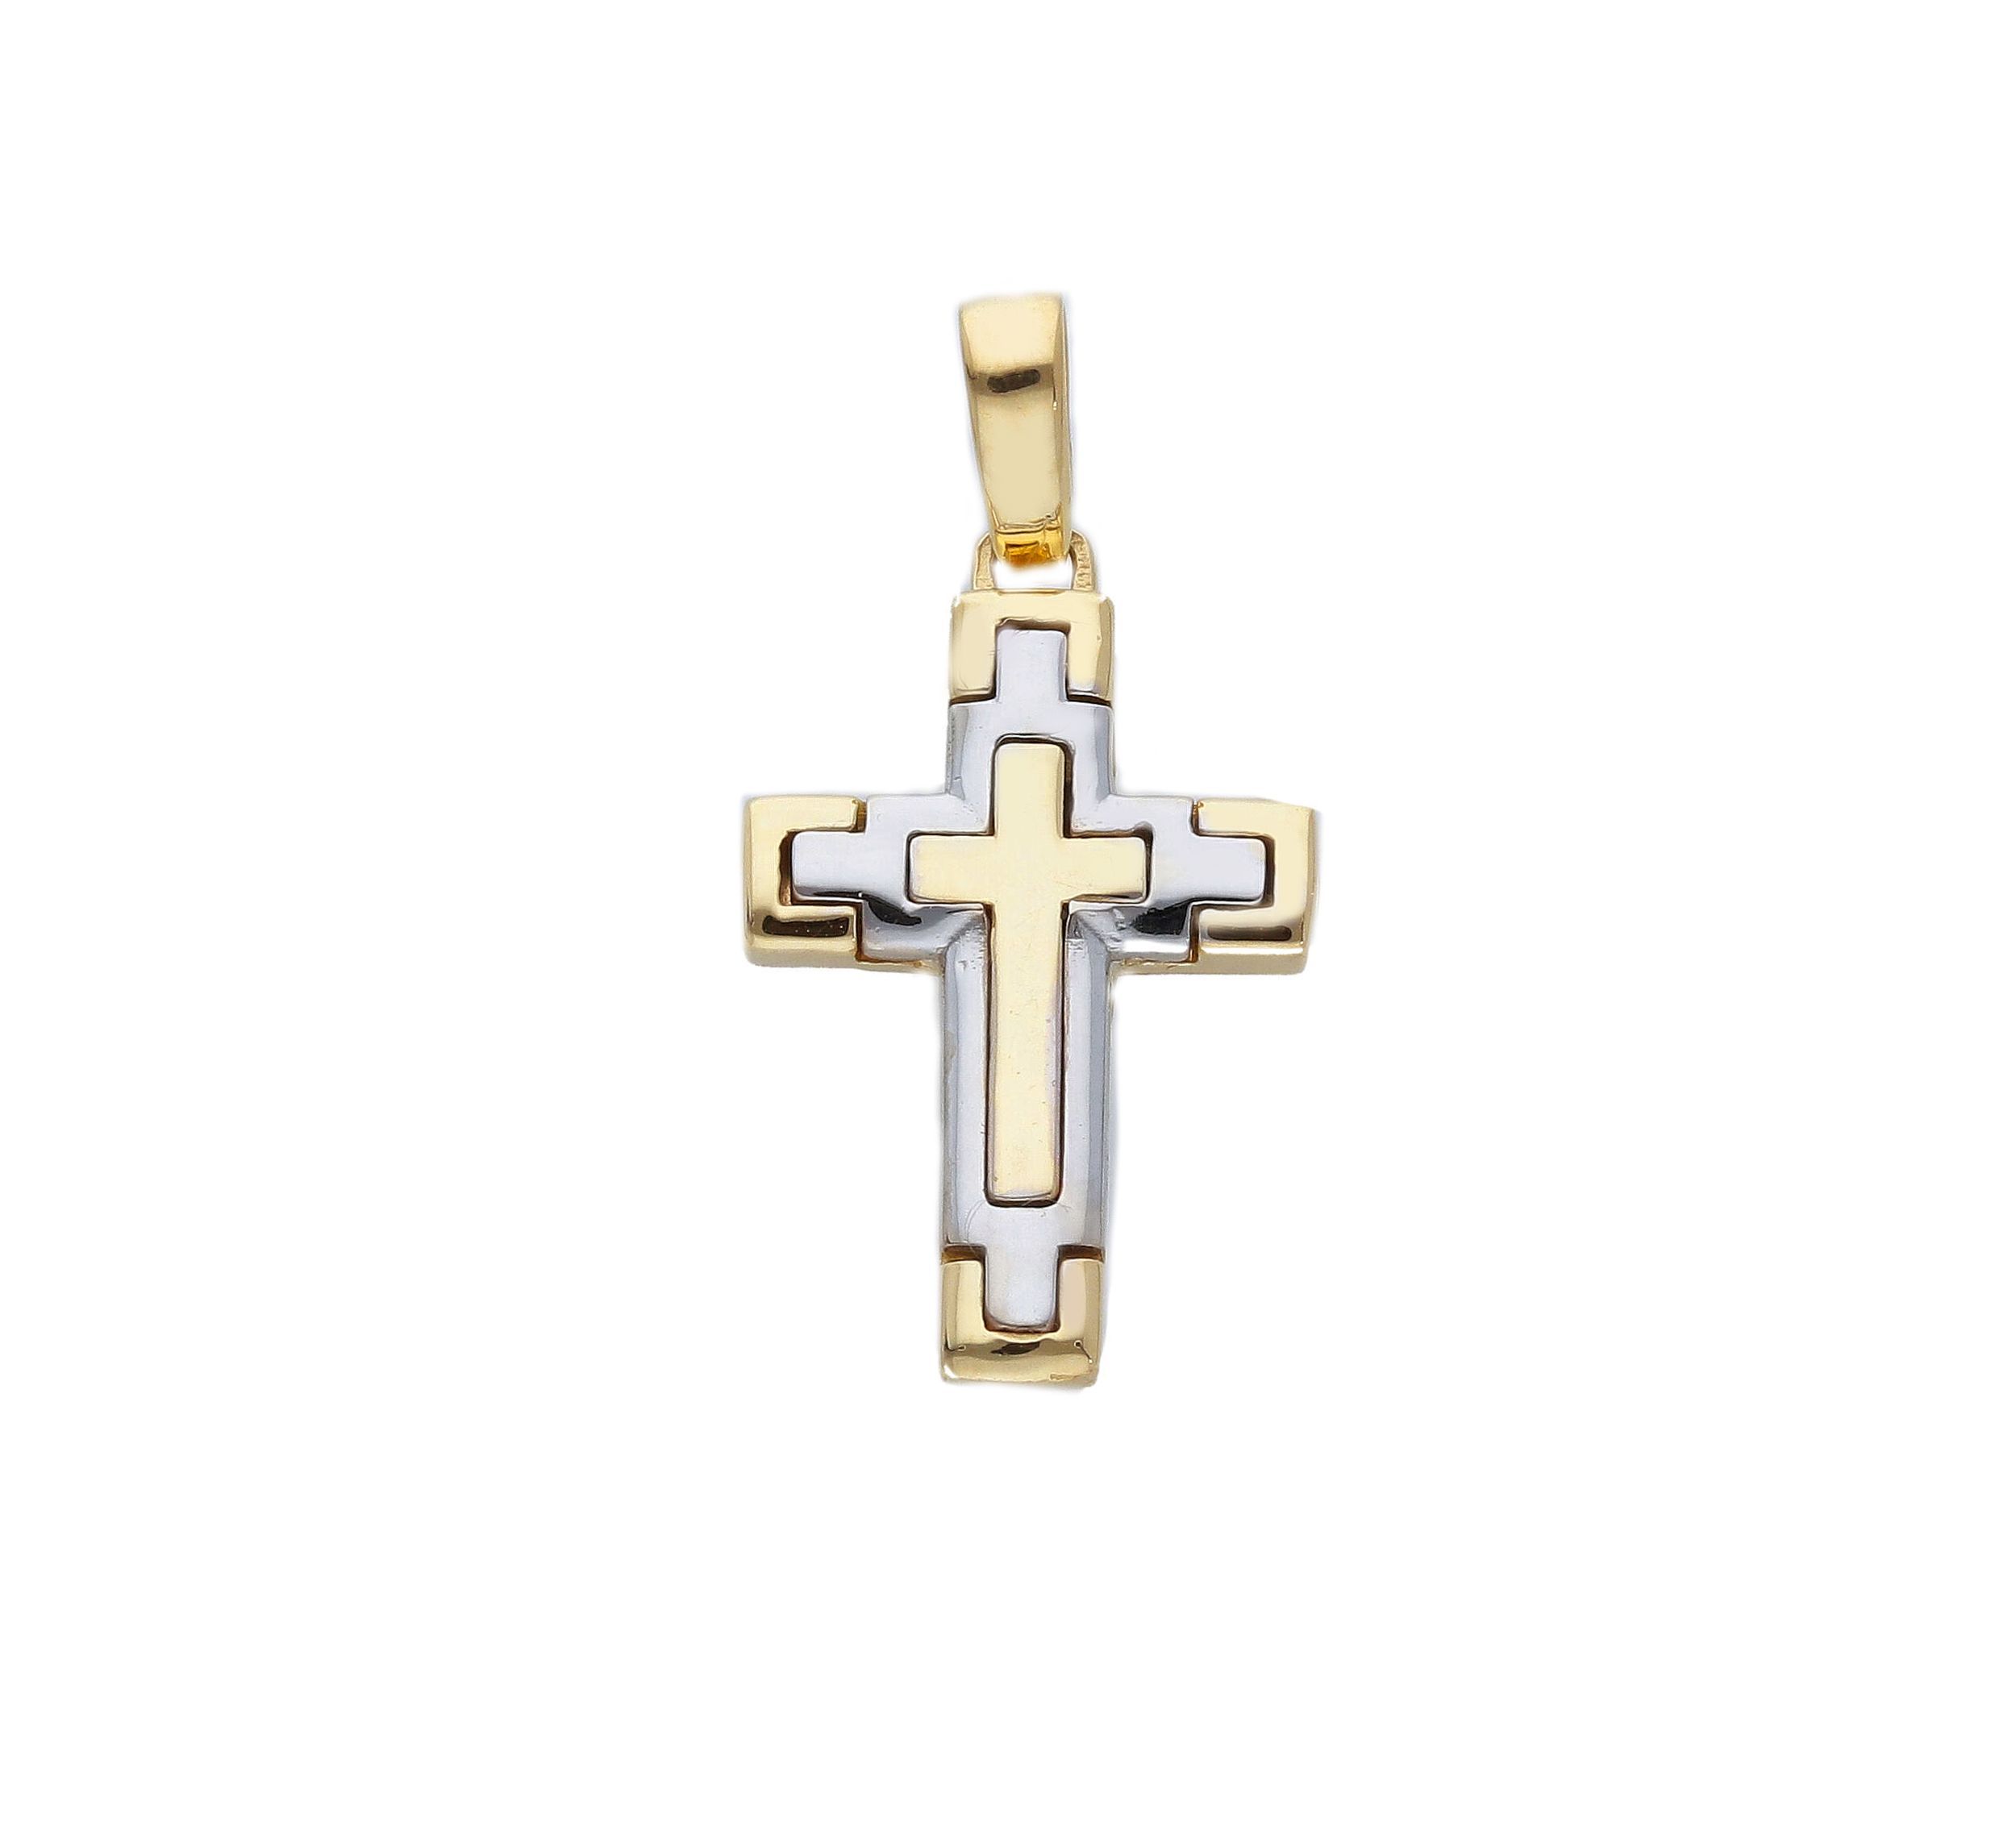 Golden cross k14 with white gold detail k14 (code S258635)